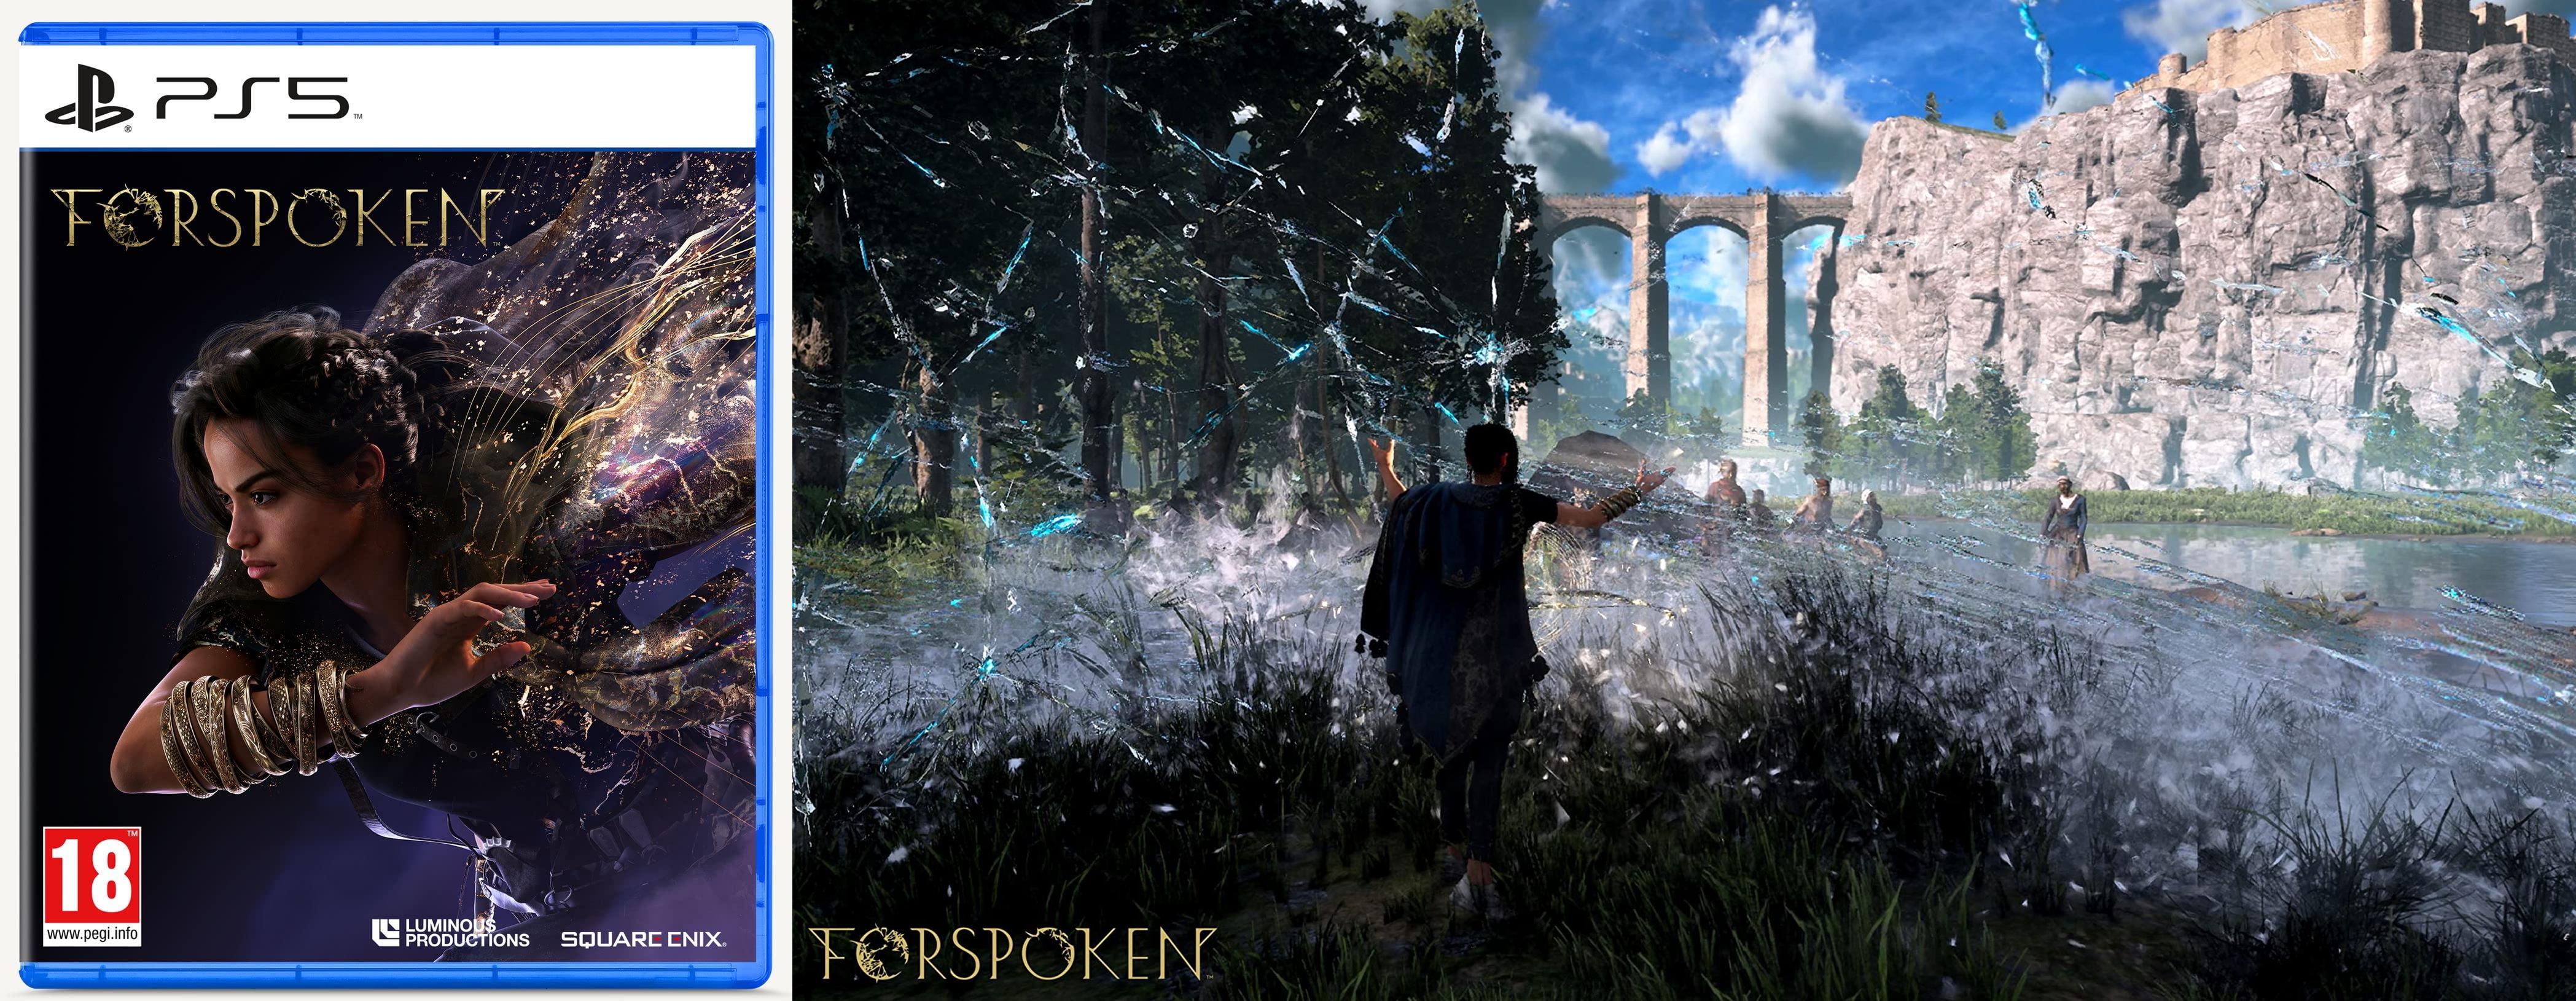 Forspoken Edición Exclusiva Amazon: Descubre el mágico mundo de Athia con este increíble videojuego para PlayStation 5